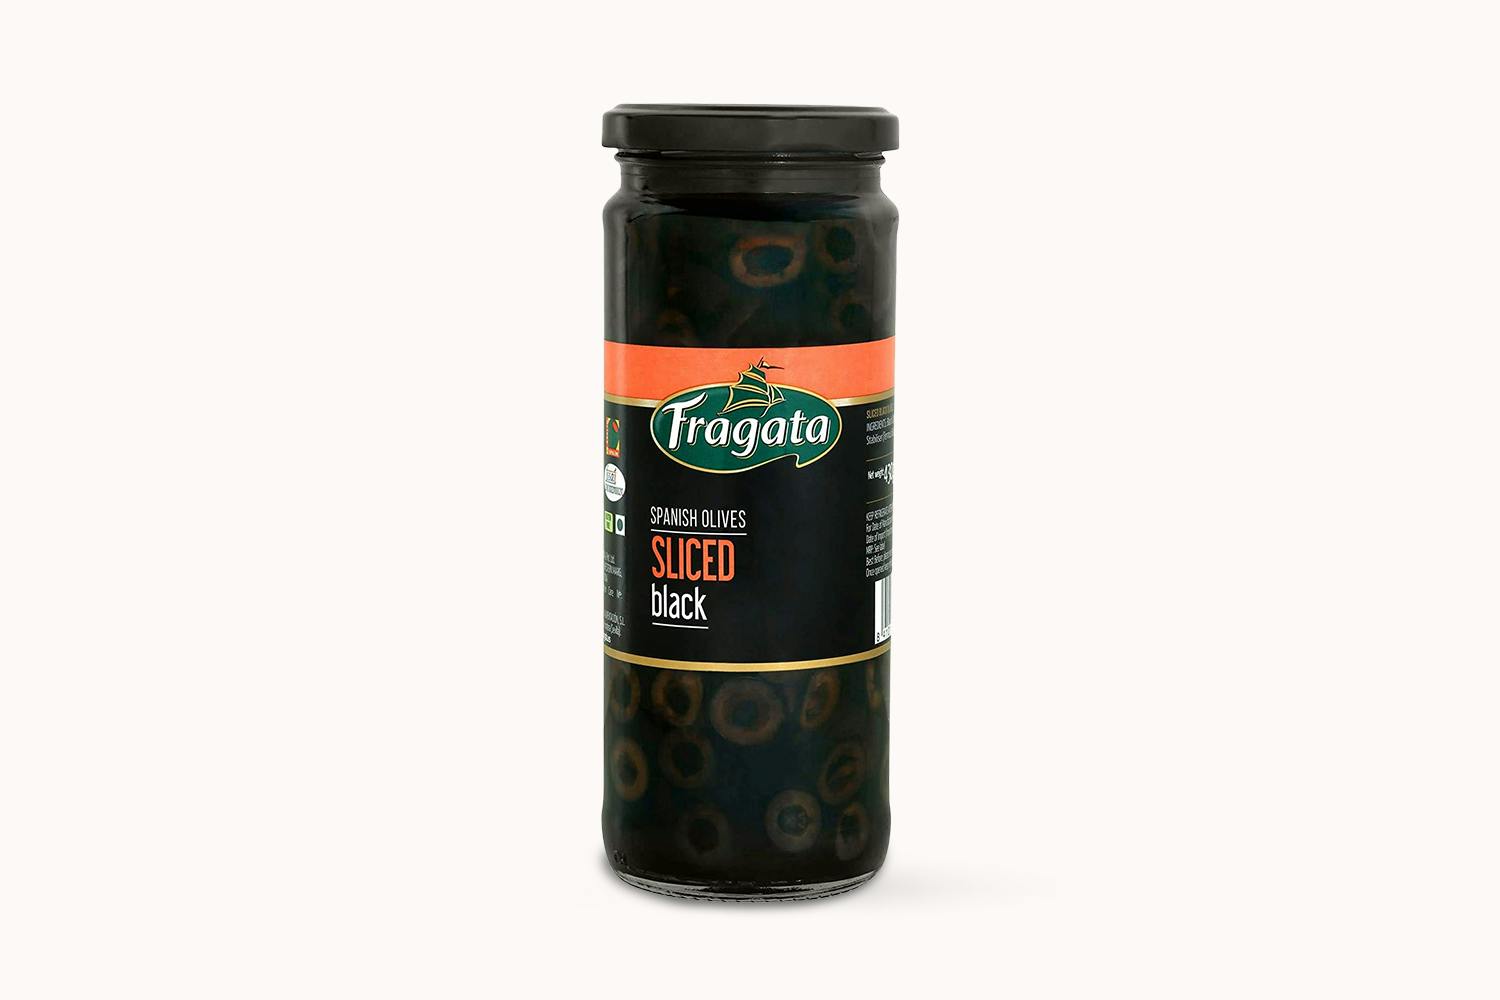 Fragata Black Olives - Sliced